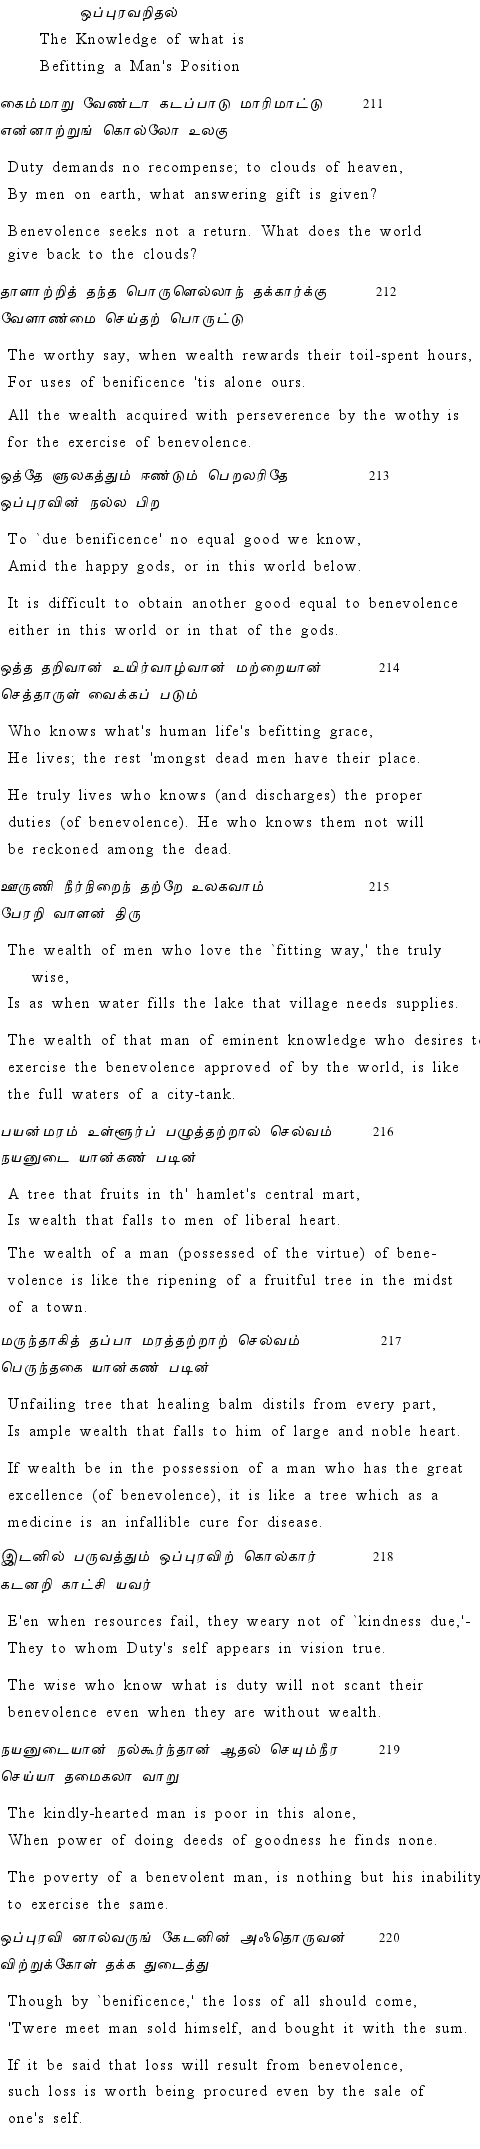 Text of Adhikaram 22